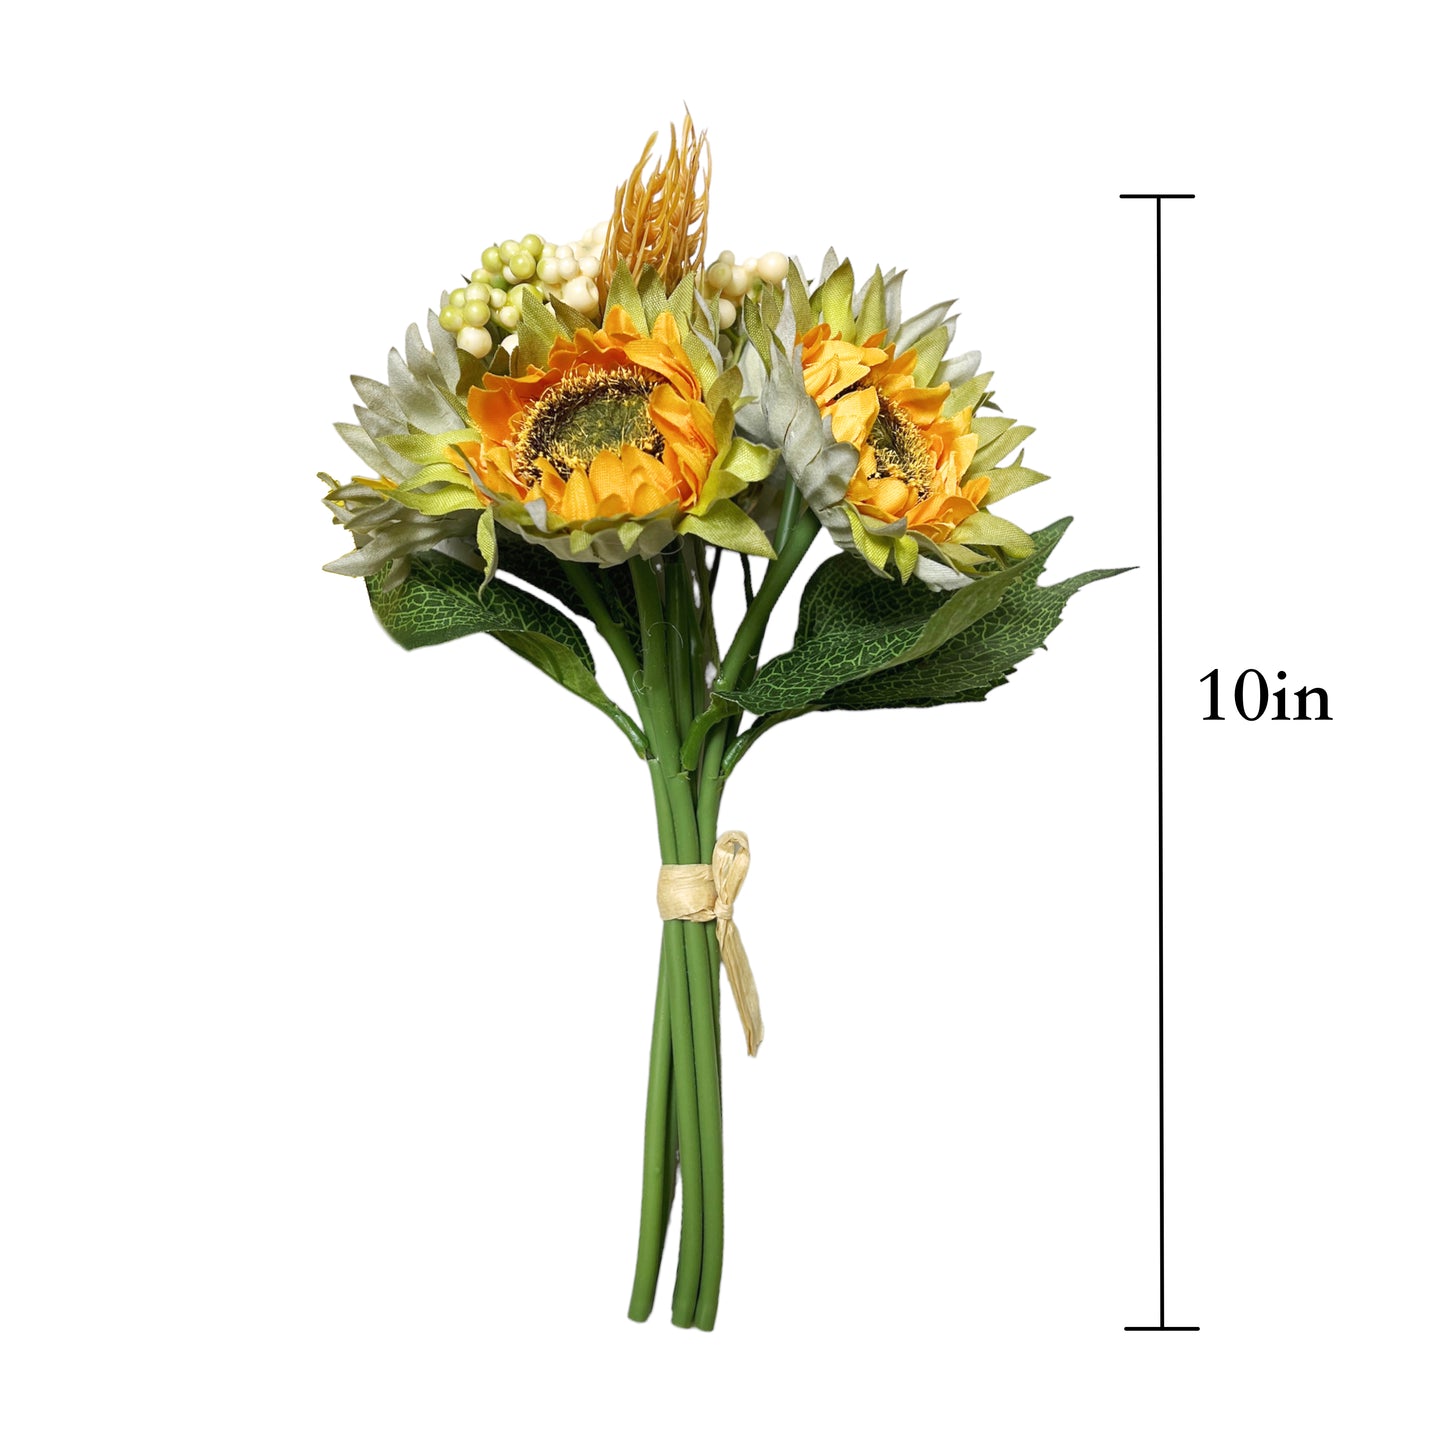 Artificial Sunflower Bouquet for Home Decor and Floral Arrangements